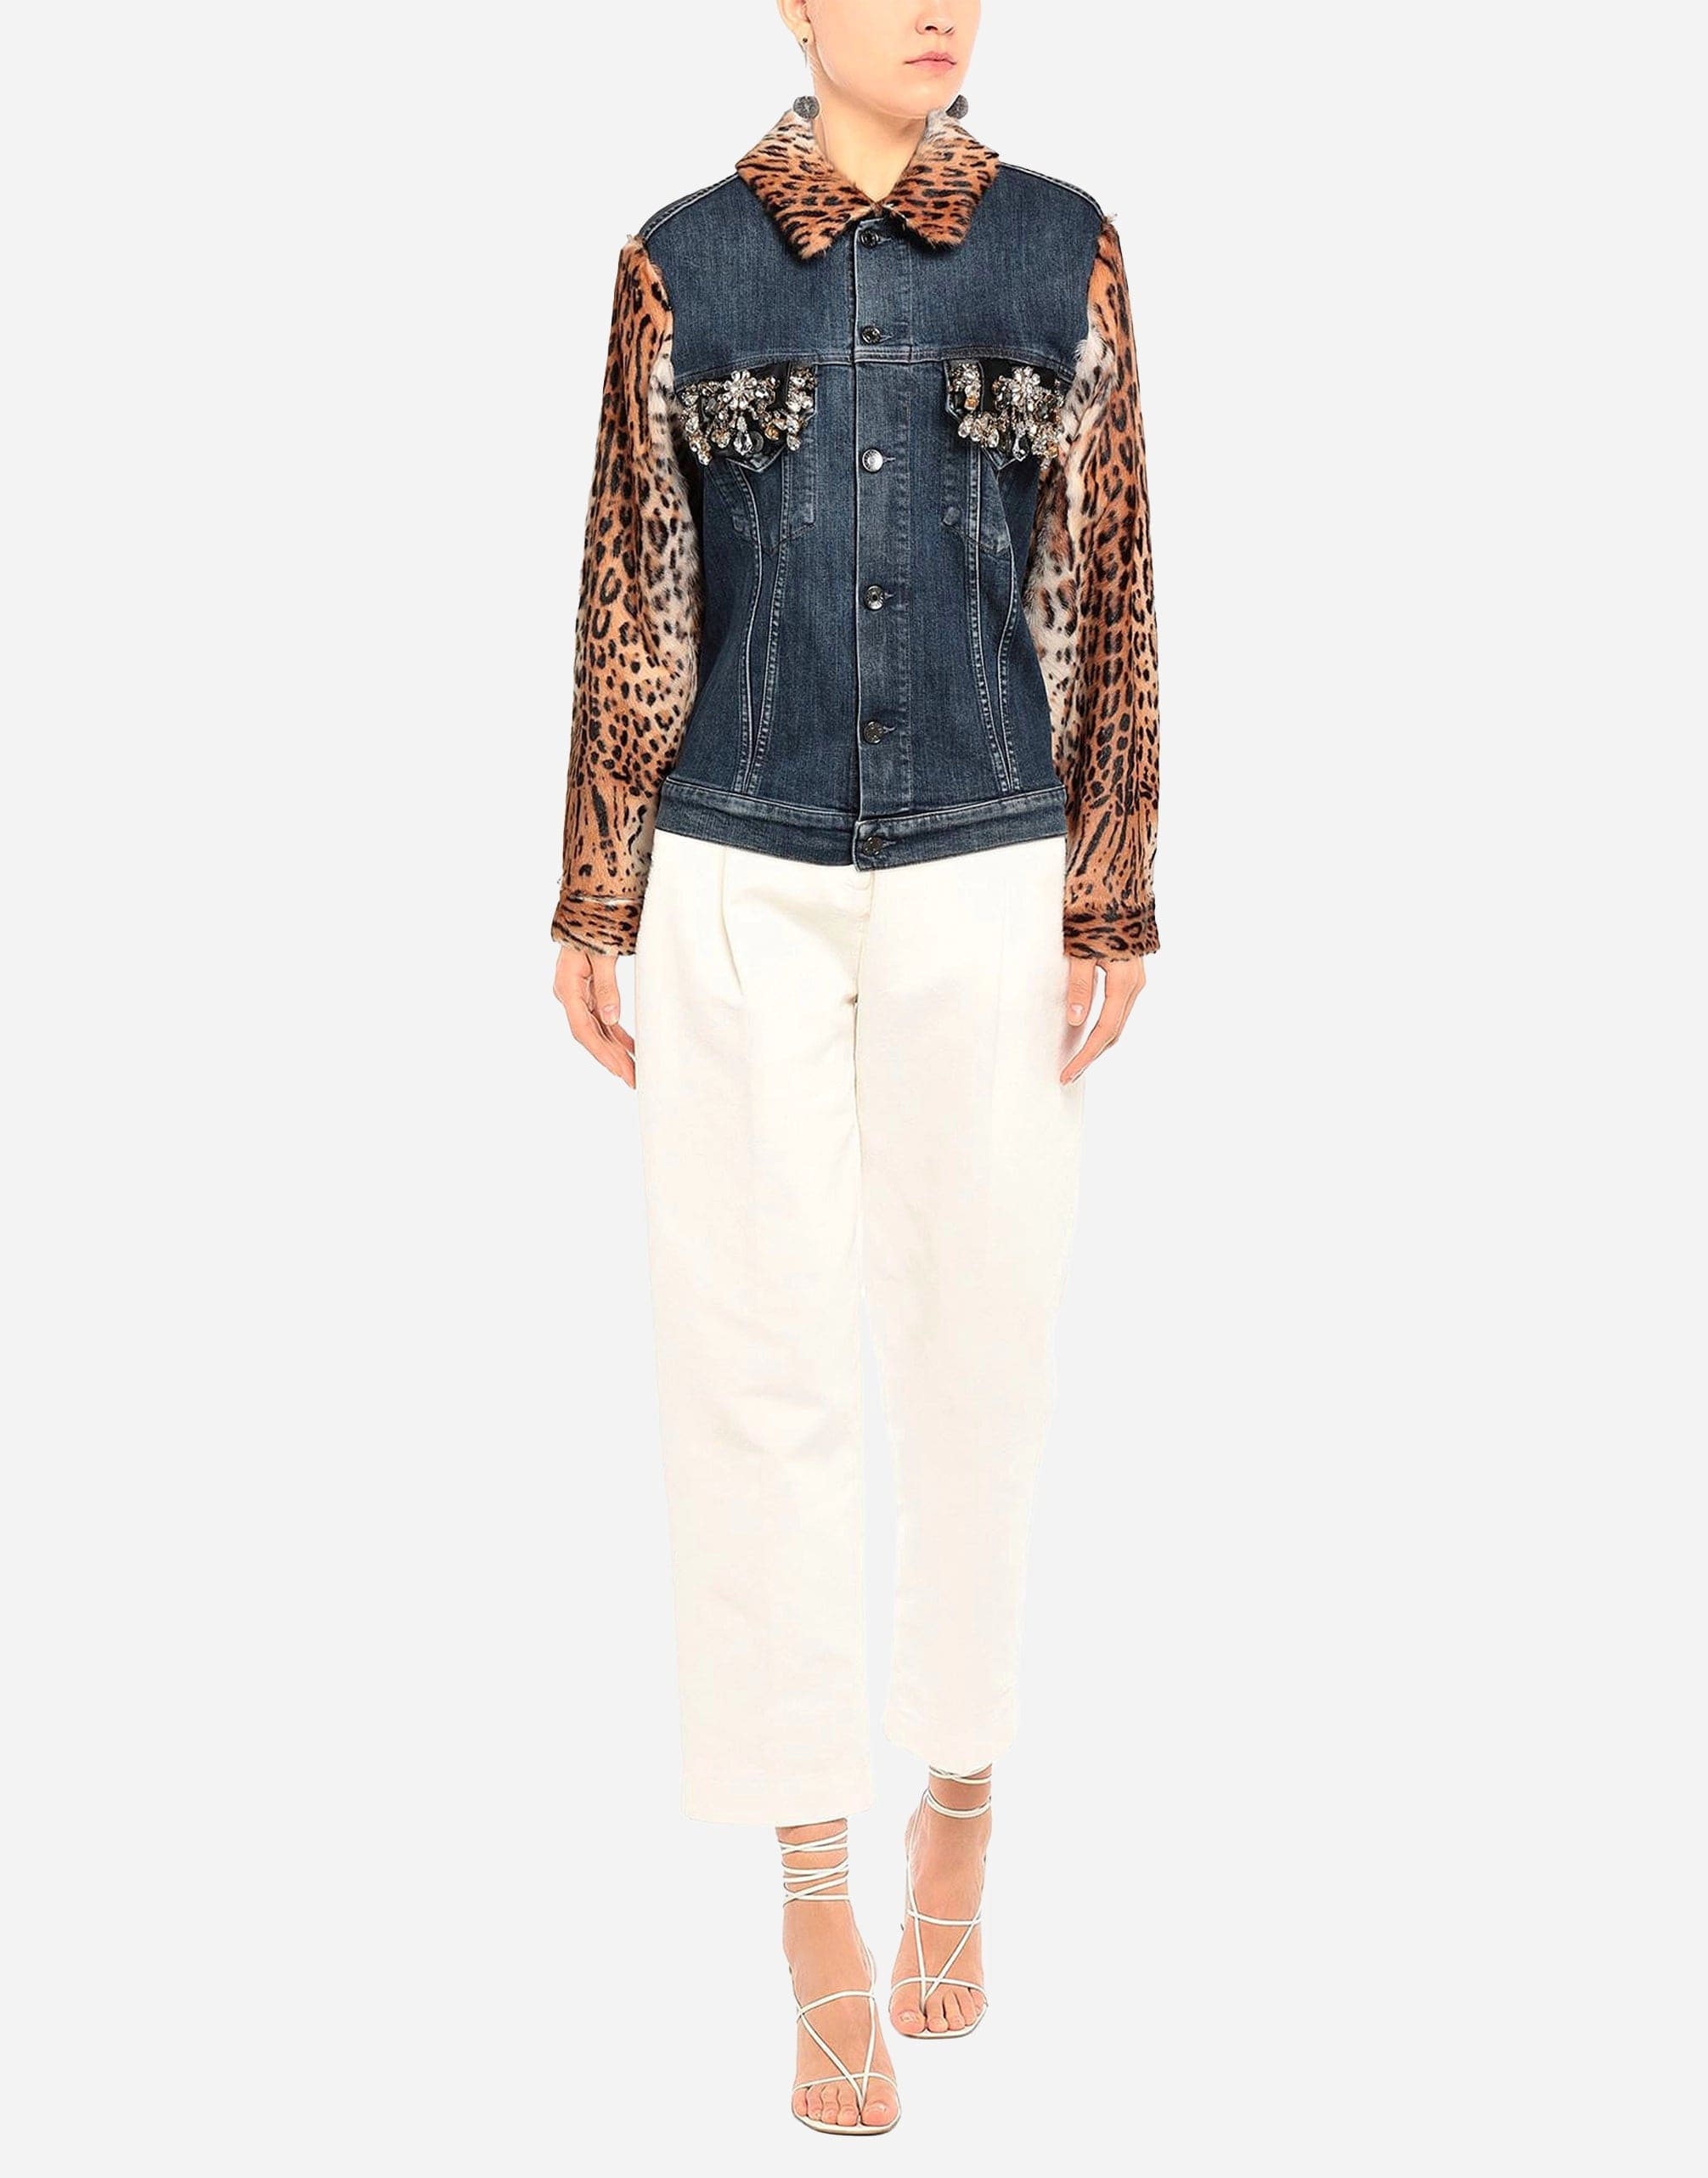 Dolce & Gabbana Leopard Print Embellished Denim Jacket